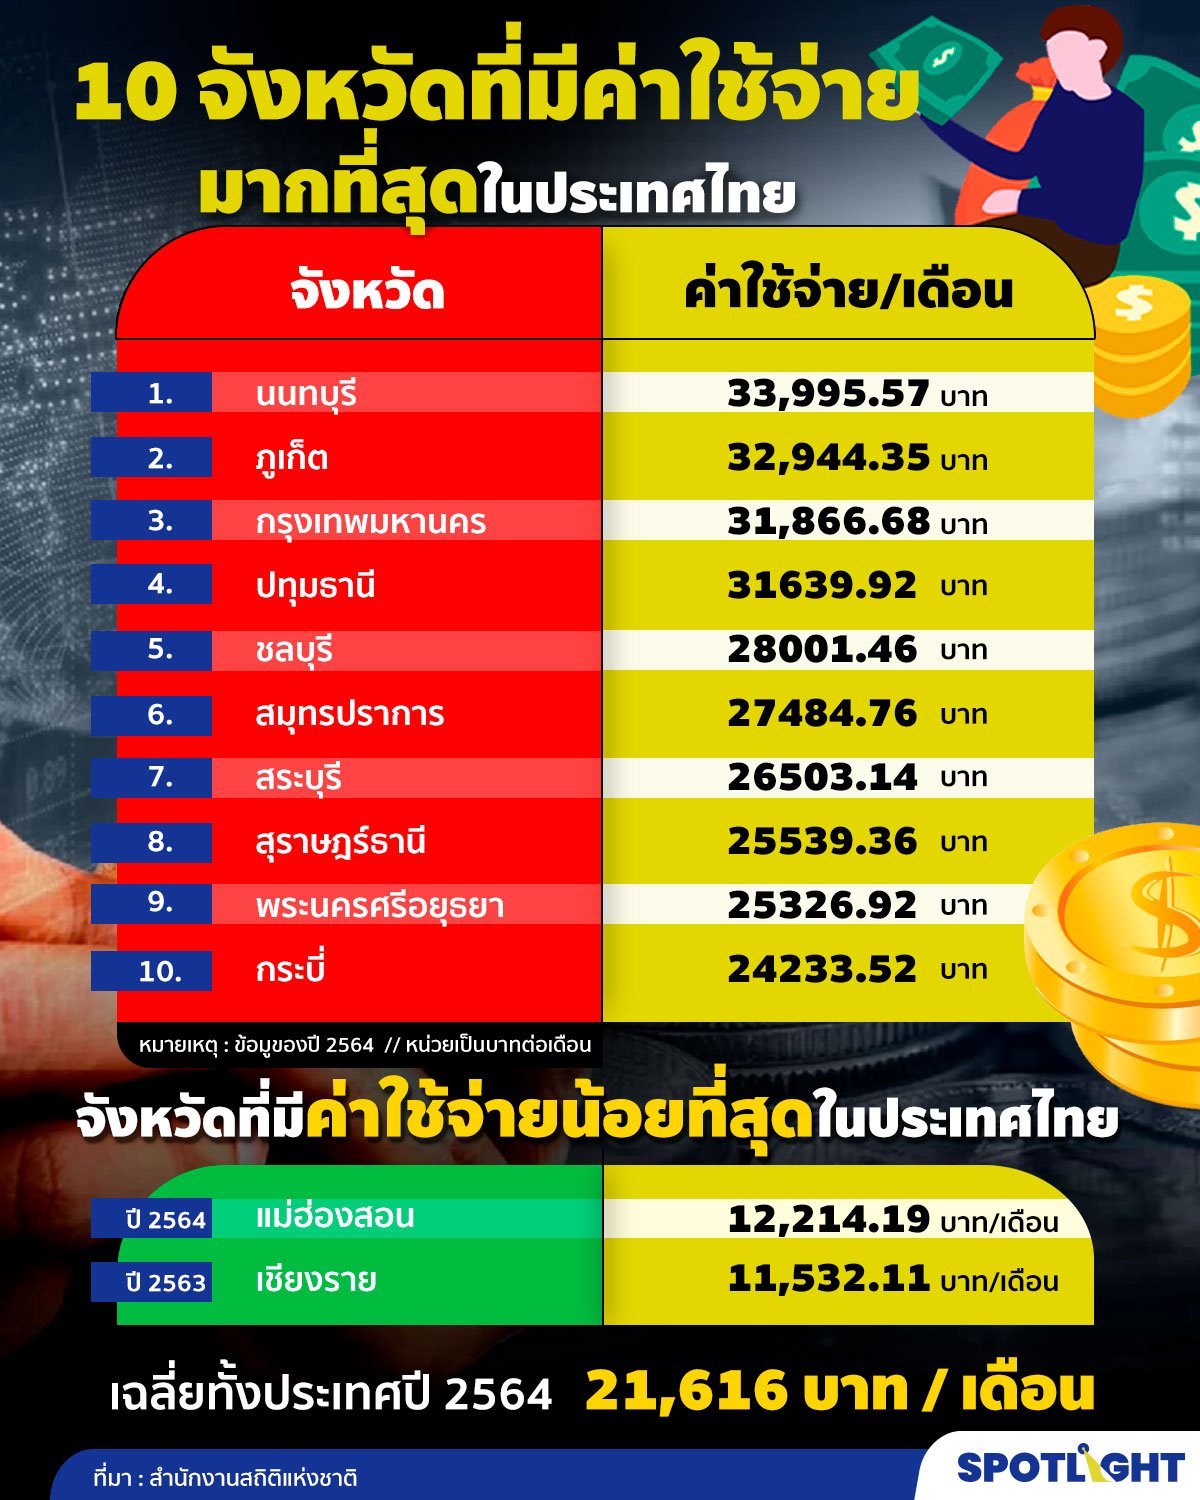 ค่าใช้จ่ายครัวเรือนไทย ปี 2564 